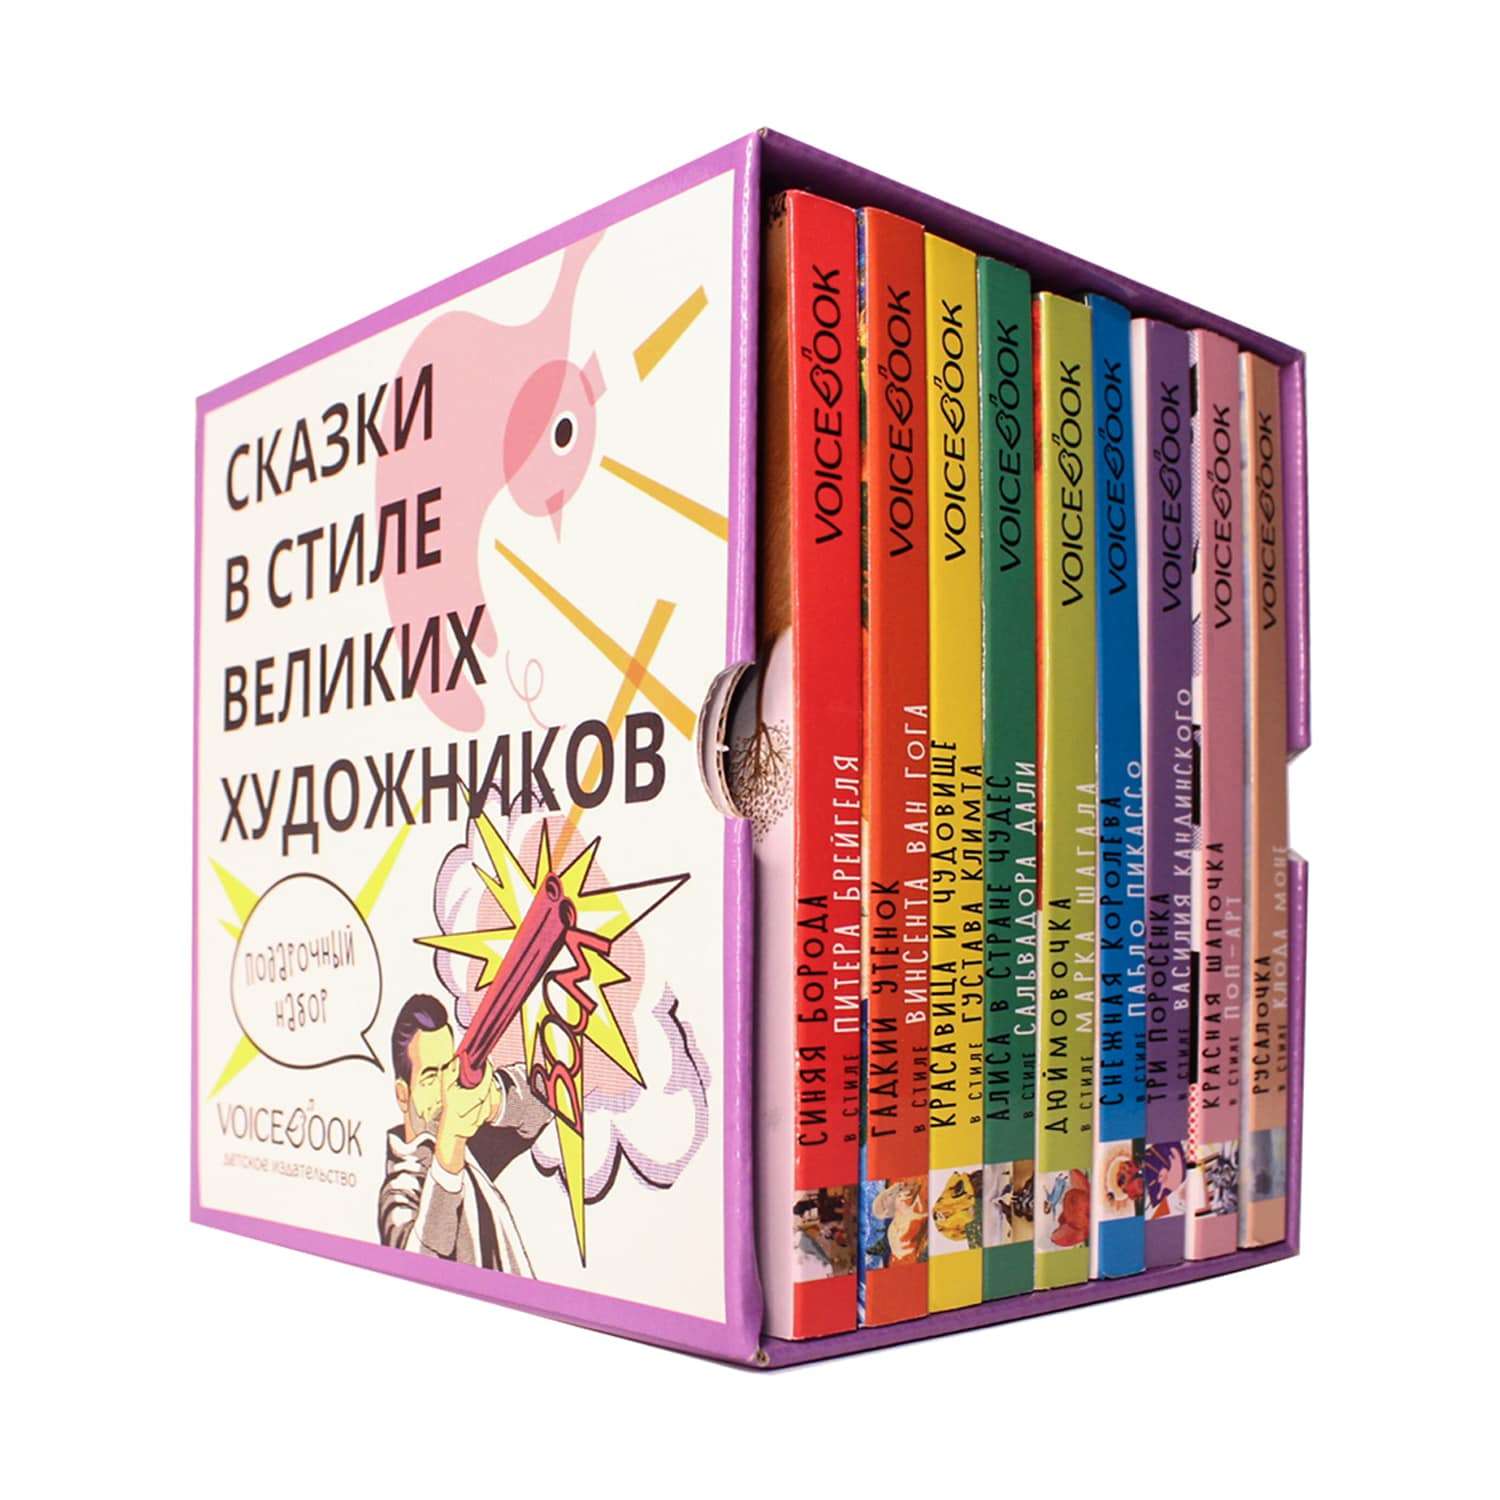 Набор книг VoiceBook Сказки В стиле великих художников подарочный 9шт 14011 - фото 1